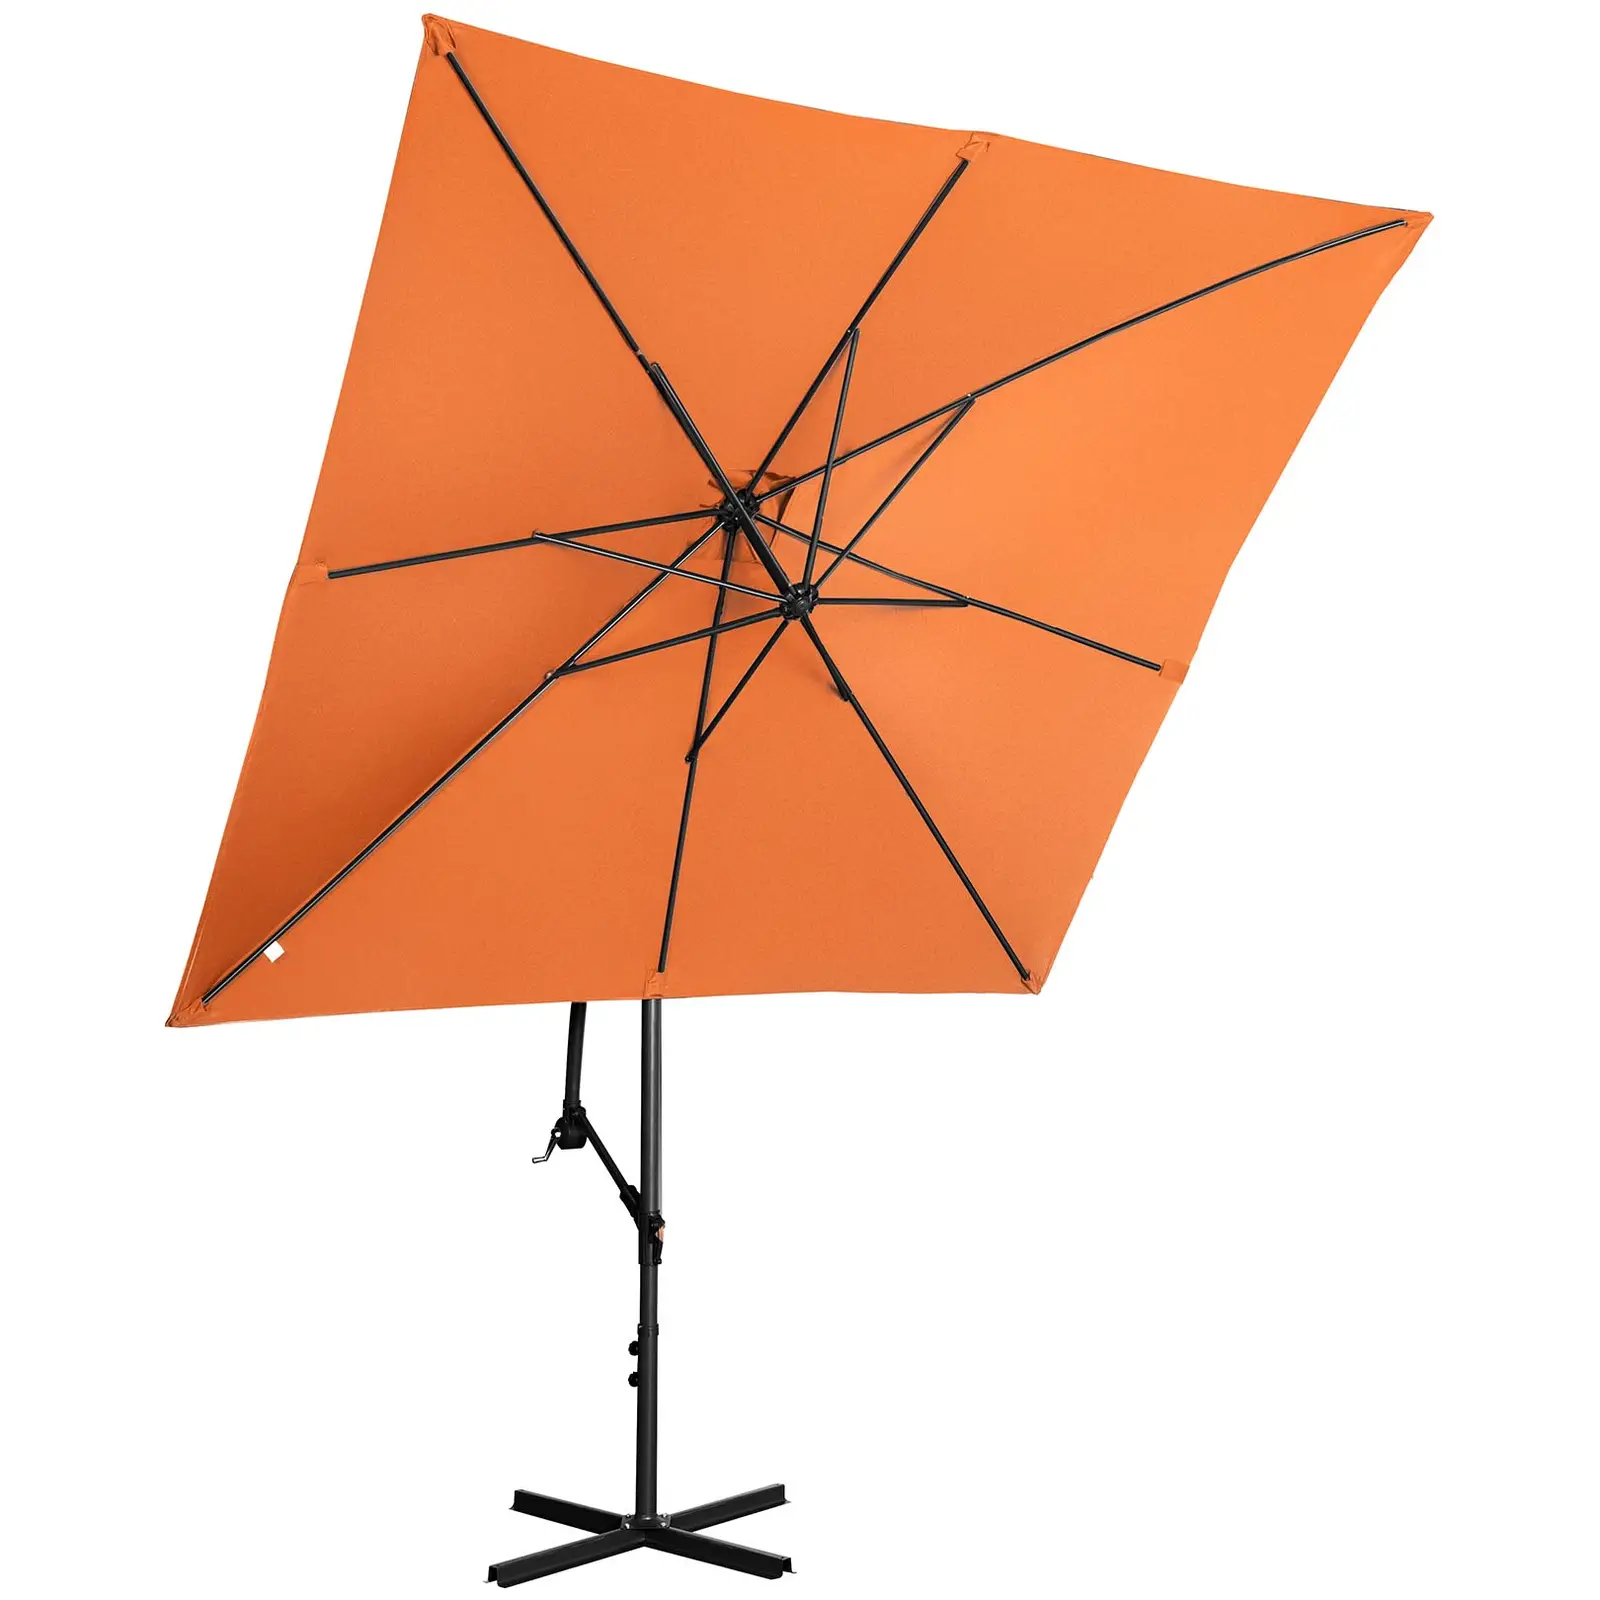 Ampelschirm - Orange - viereckig - 250 x 250 cm - neigbar